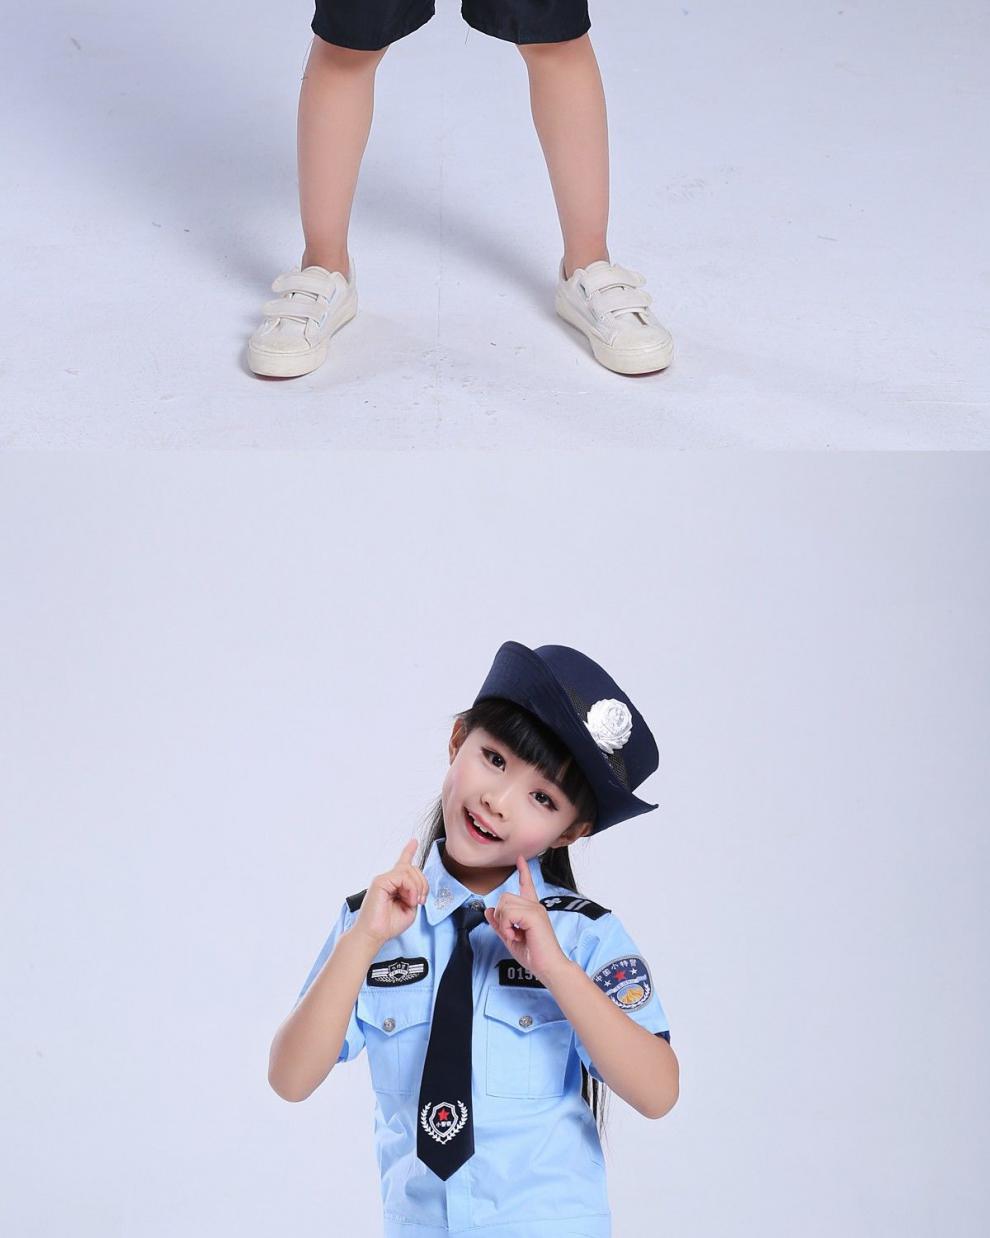 三四岁儿童警察服装图片